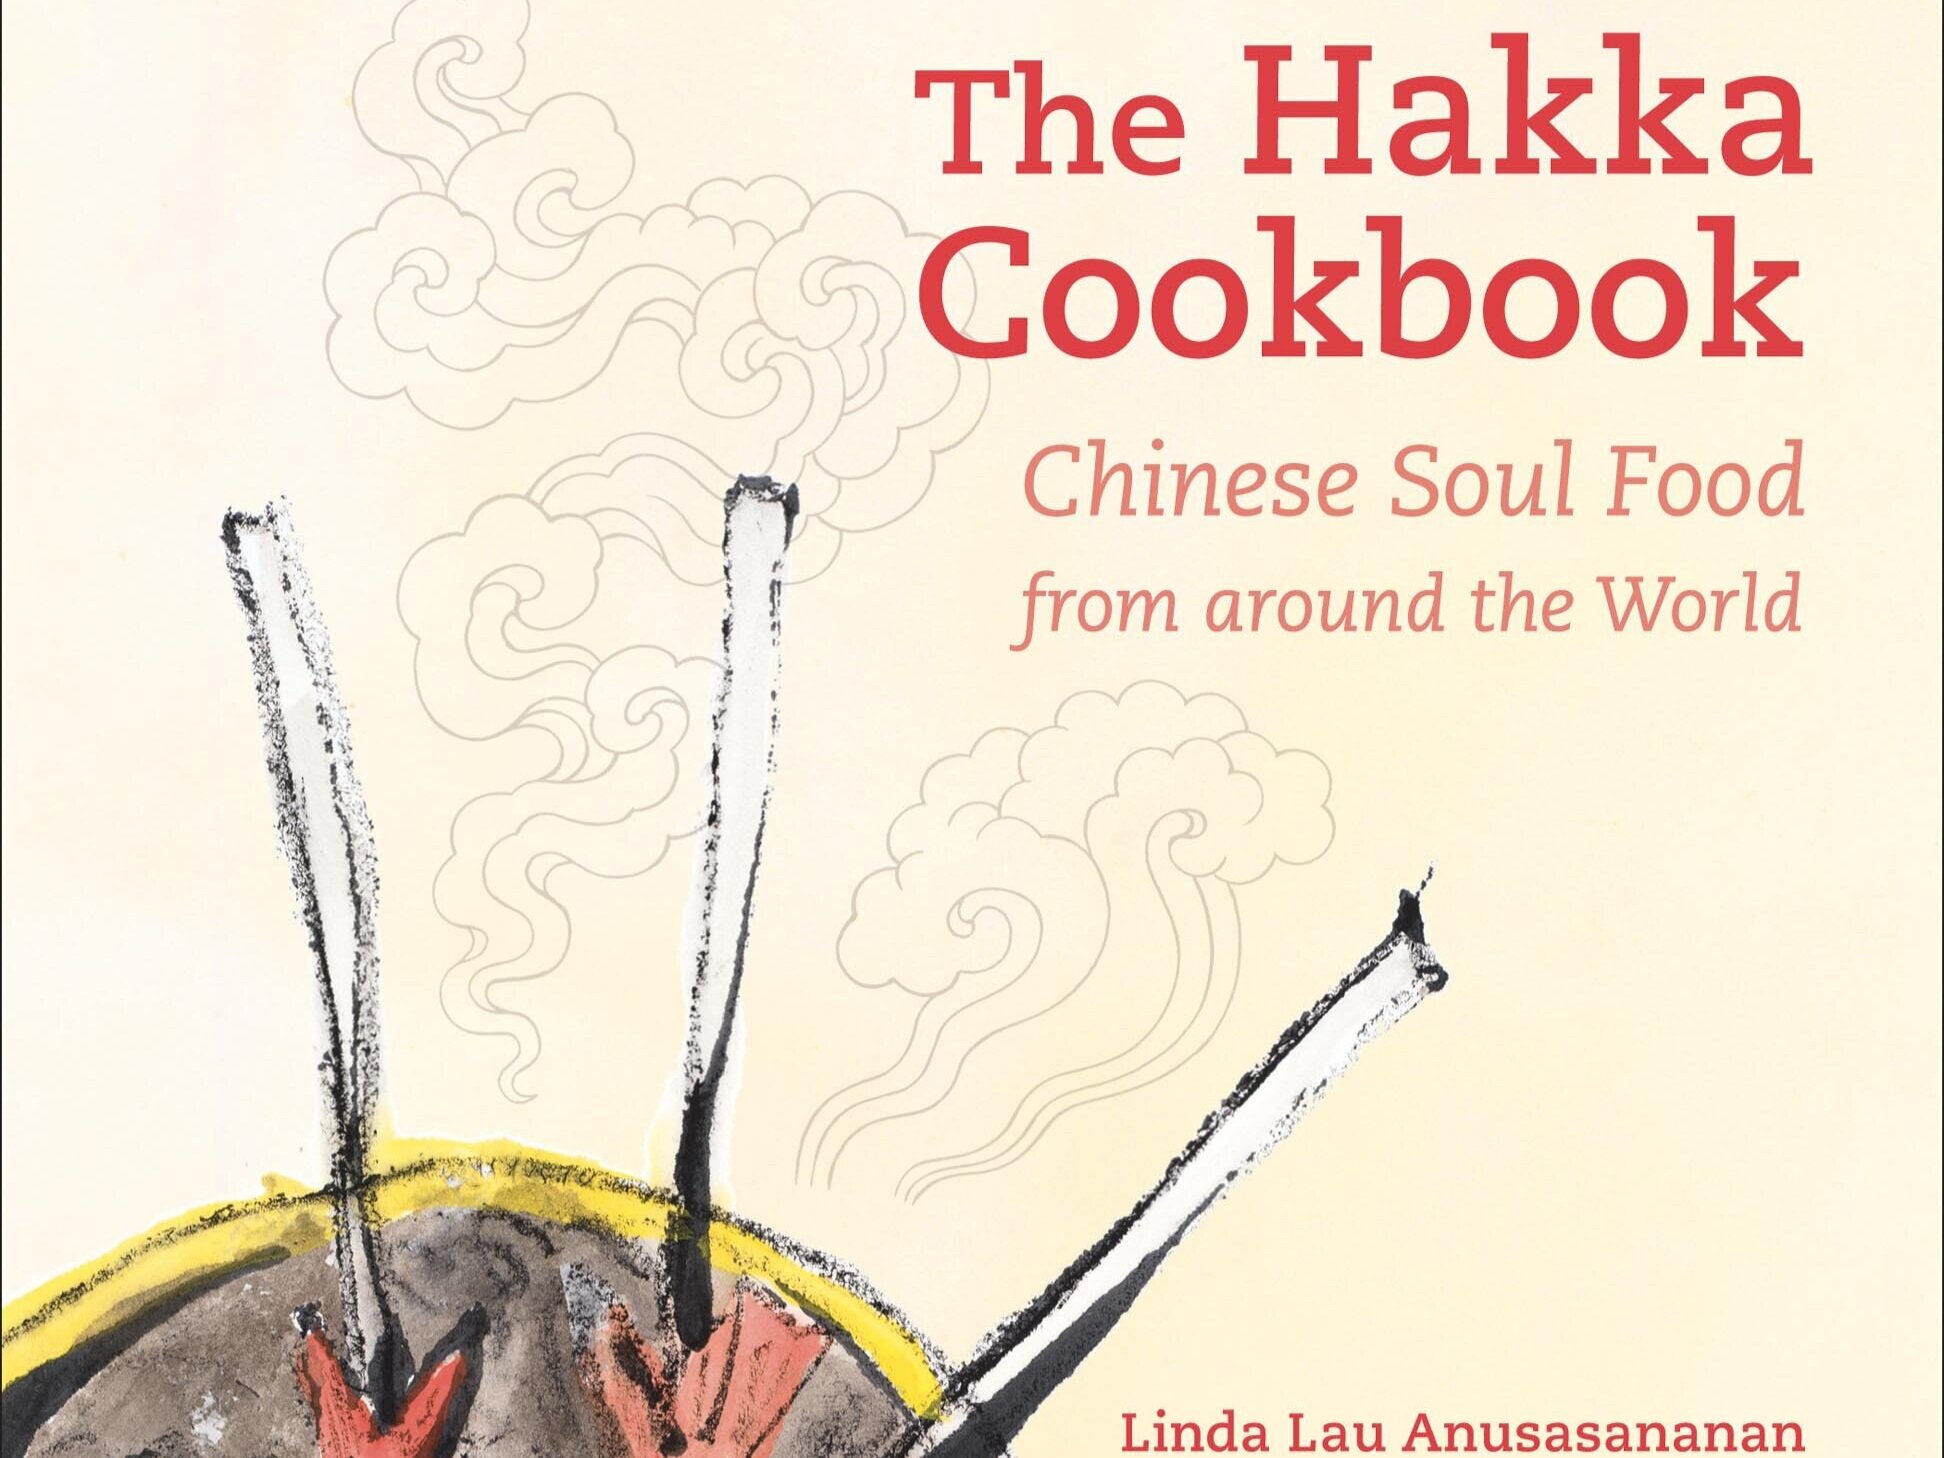 Hakka+cookbookEdited.jpg